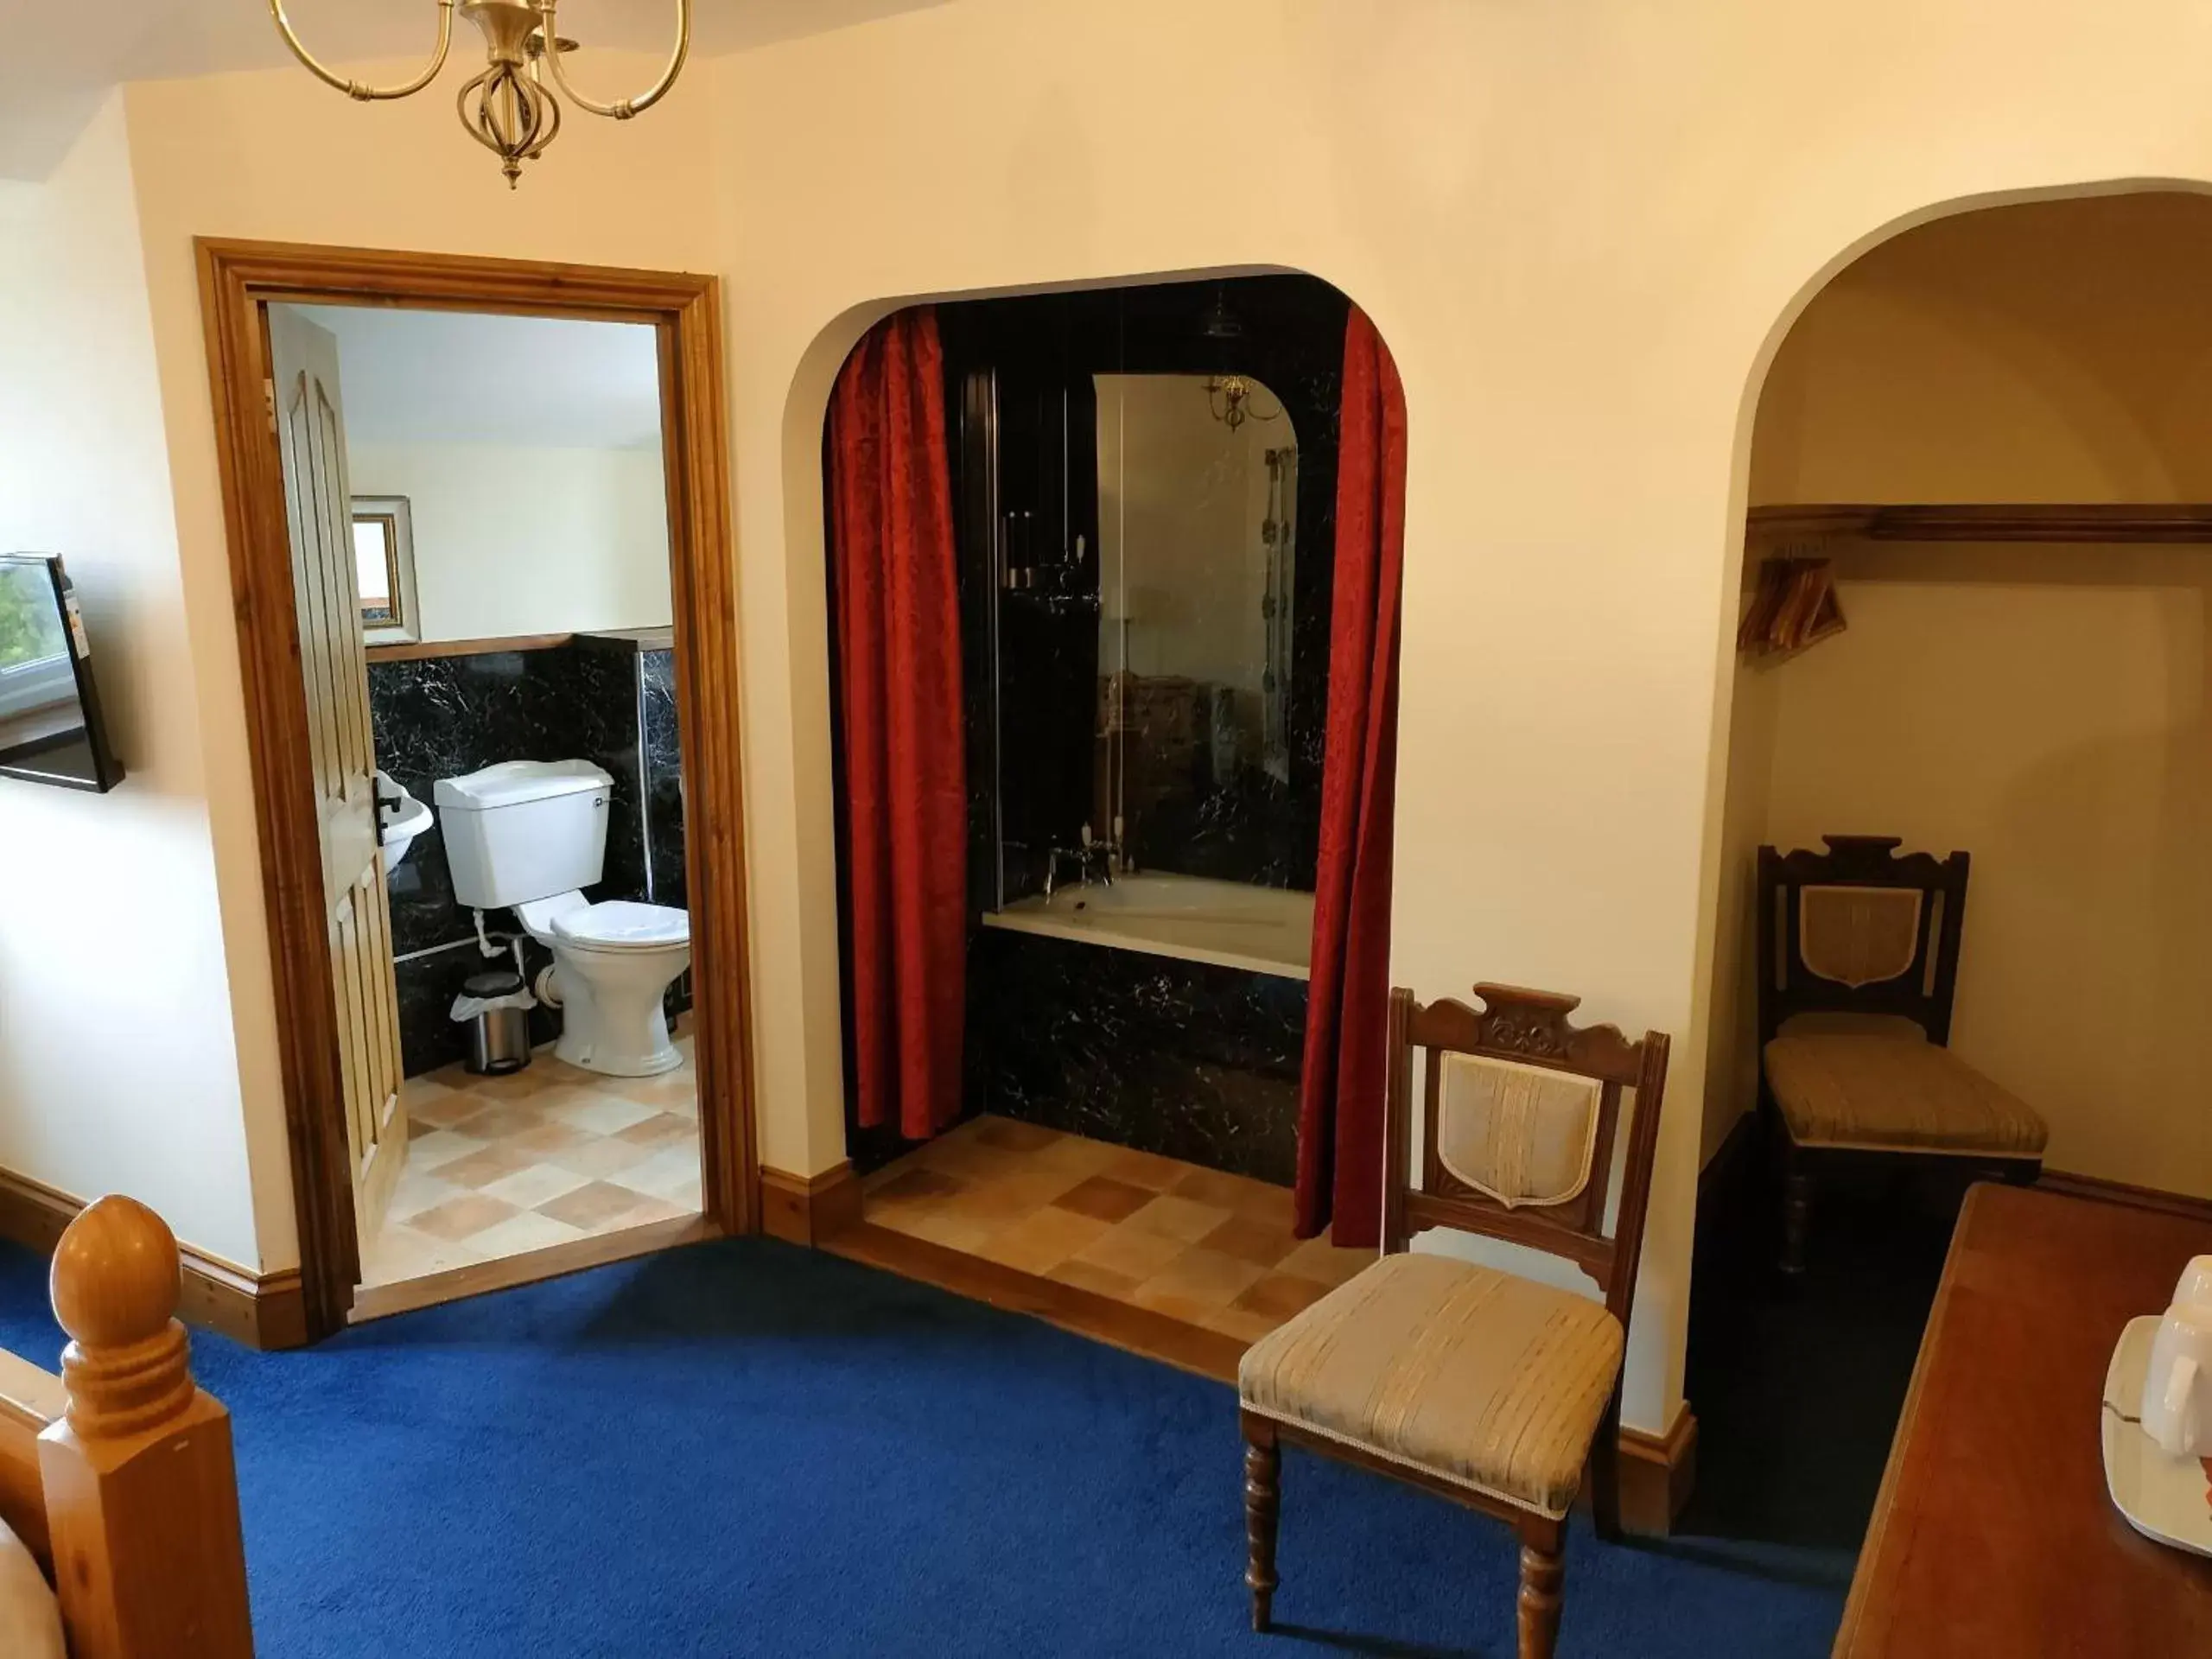 Bedroom, Bathroom in Great Trethew Manor Hotel & Restaurant